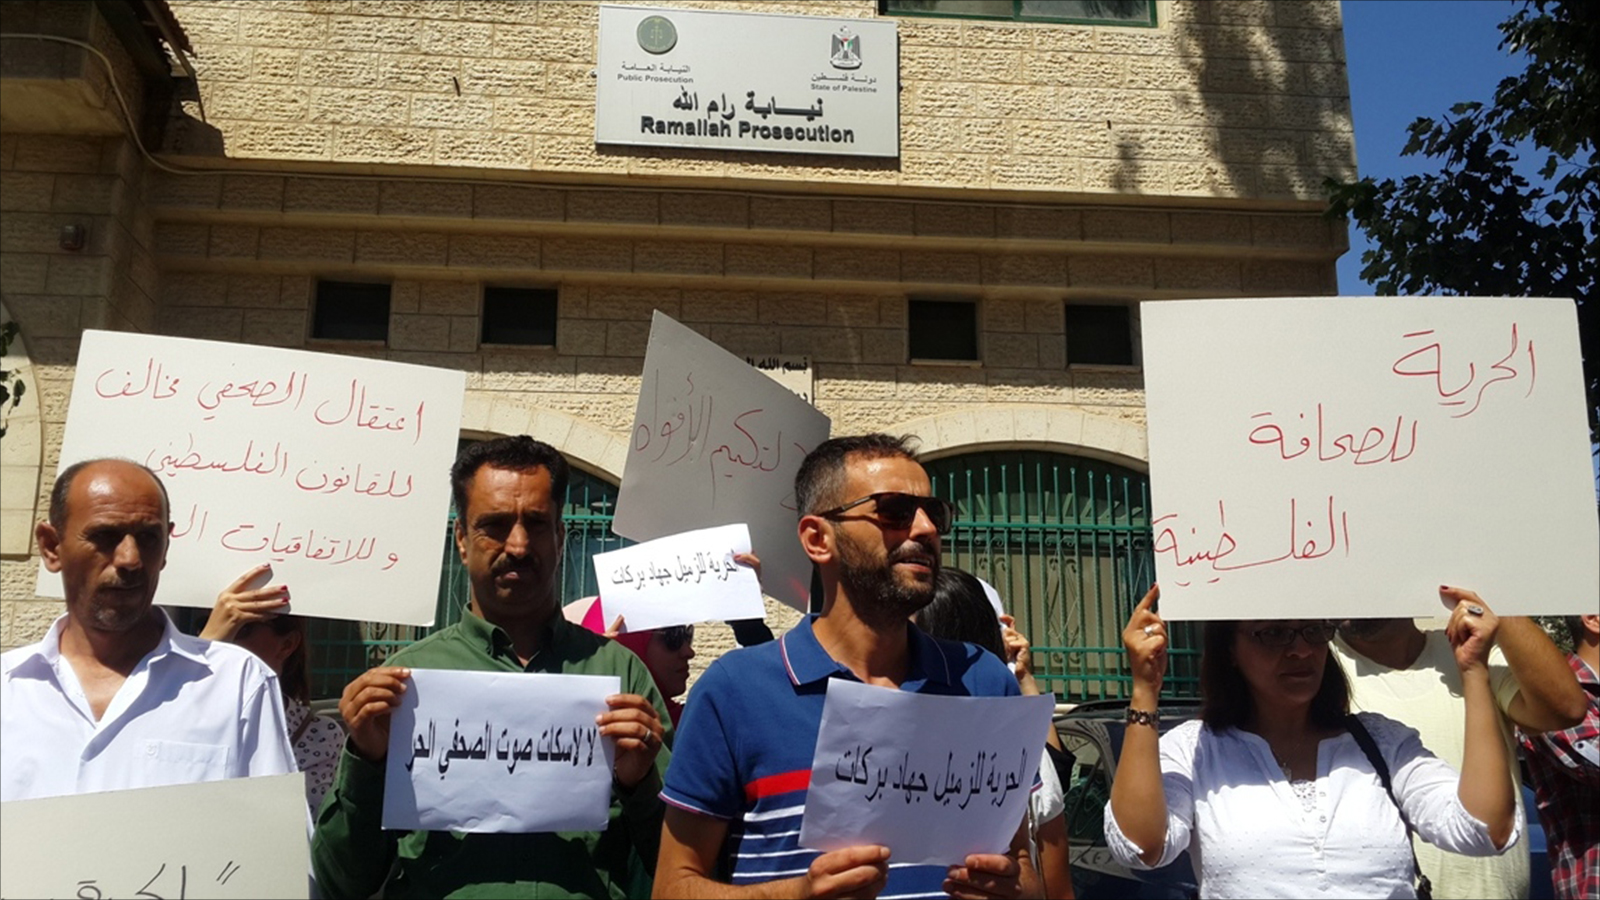 صحفيون ونشطاء يعتصمون أمام مقر نيابة رام الله للمطالبة بالافراج عن الصحفي جهاد بركات. (الجزيرة)